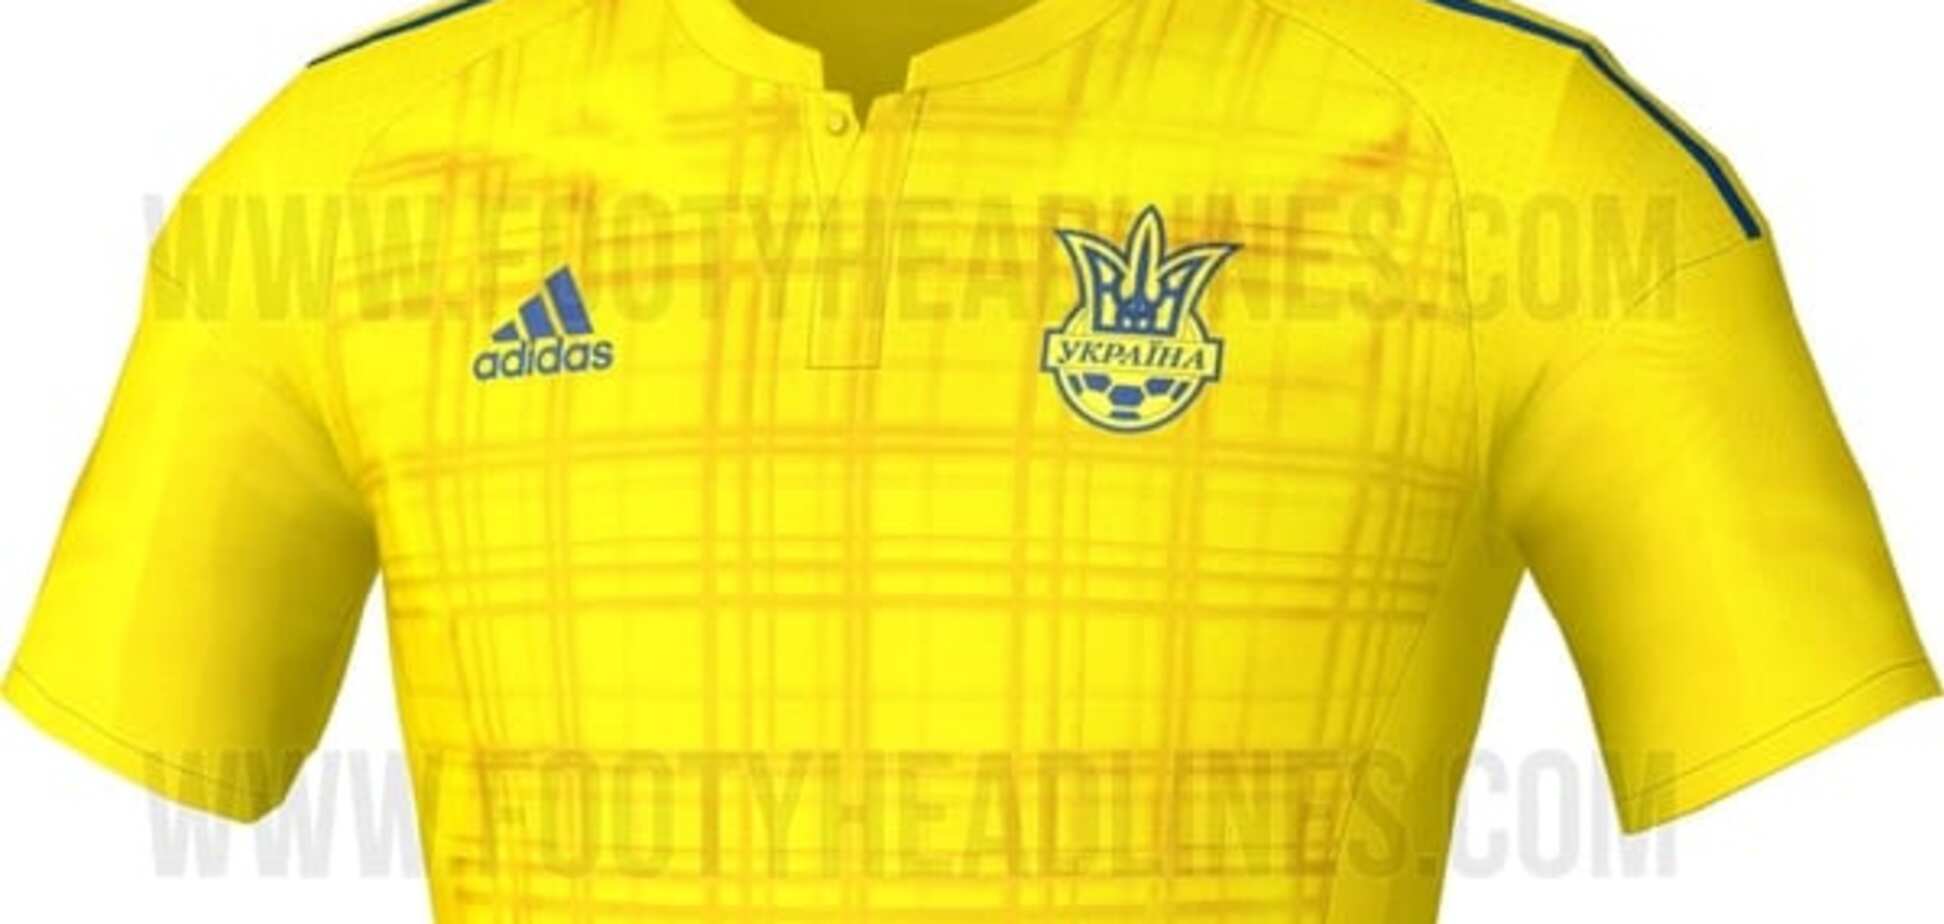 Збірна України приготувала оригінальну форму на Євро-2016: фото новинки